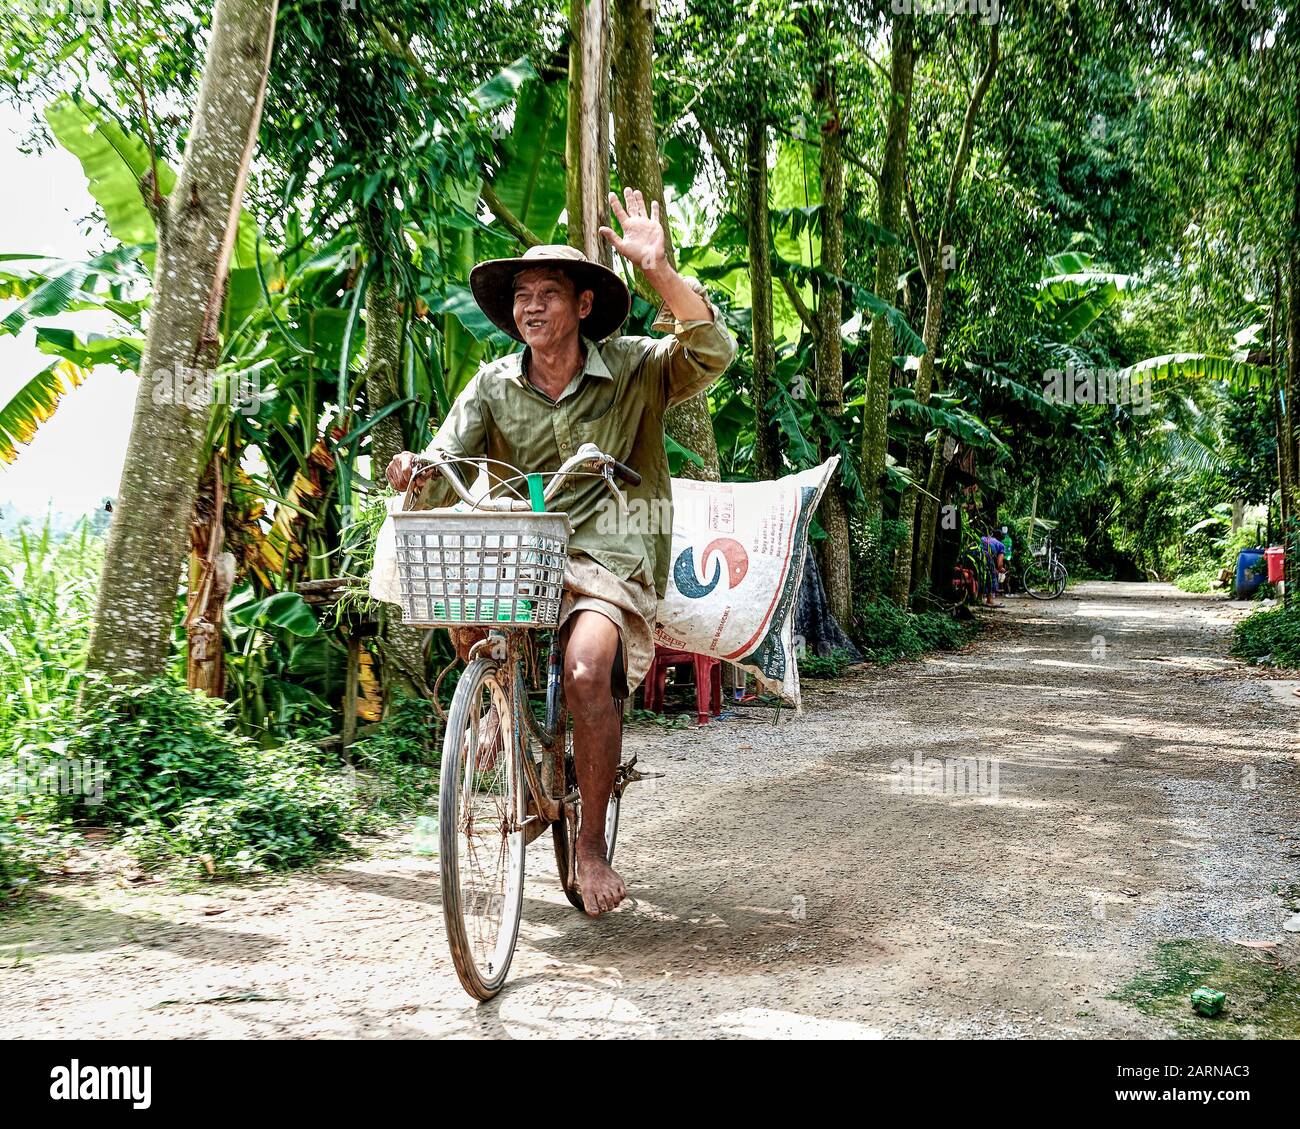 Duro lavoro contadino vietnamita in bicicletta. Gli agricoltori sono poveri di ricchezza materiale e ricchi di forza spirituale. Sempre un'espressione allegra. Foto Stock